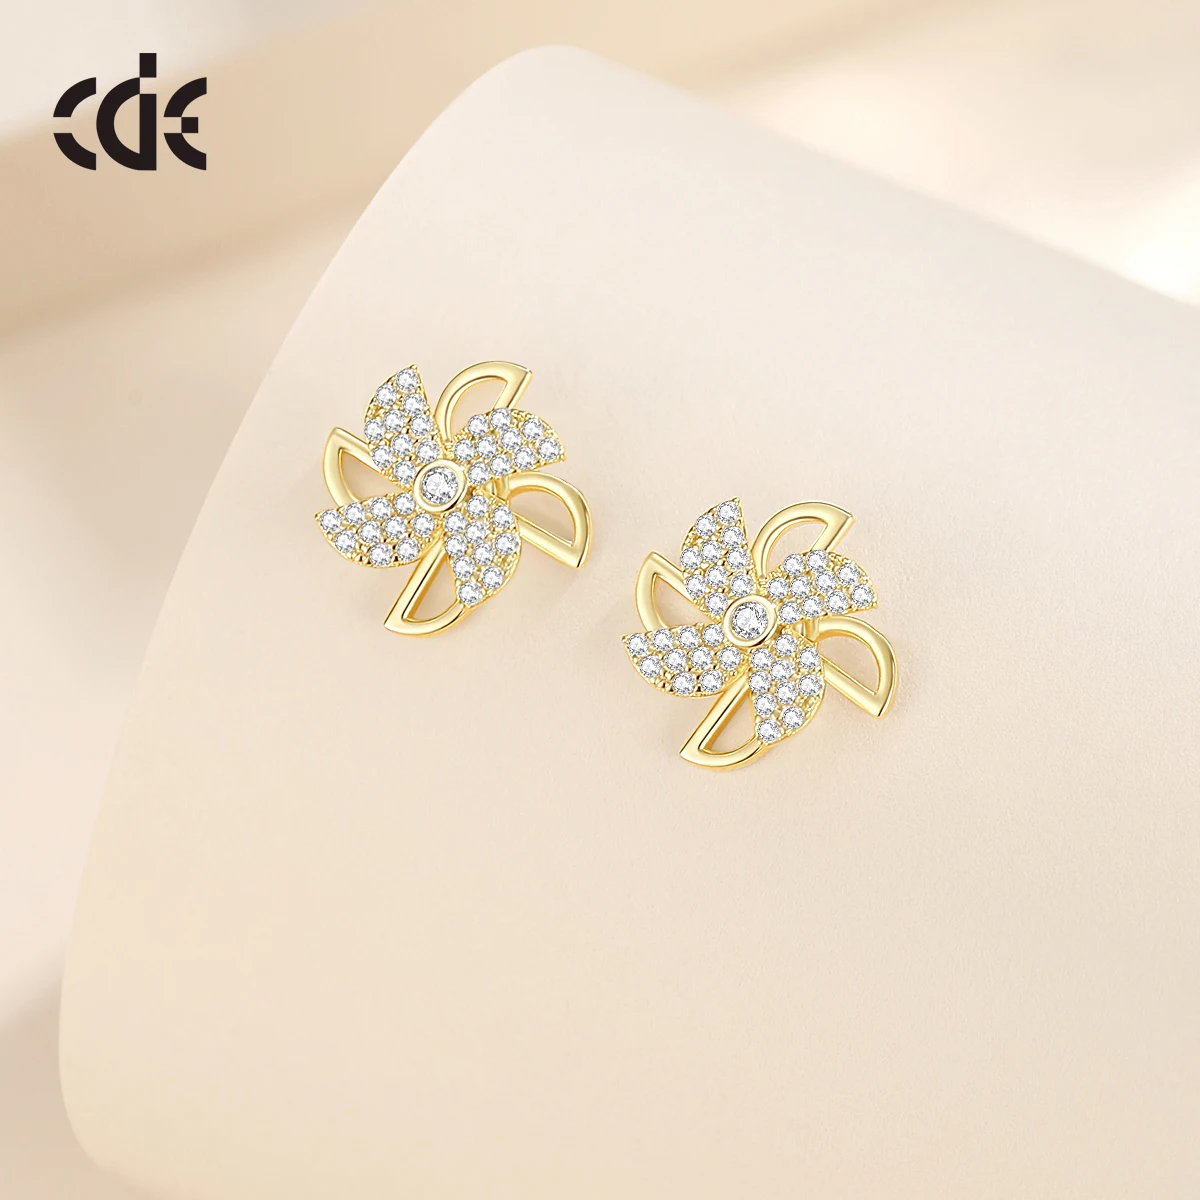 CDE CZYE009 Silver 925 Jewelry Anxiety Earrings 14K Gold Plated Pinwheel Earrings Wholesale Bulk Women Windmill Stud Earrings